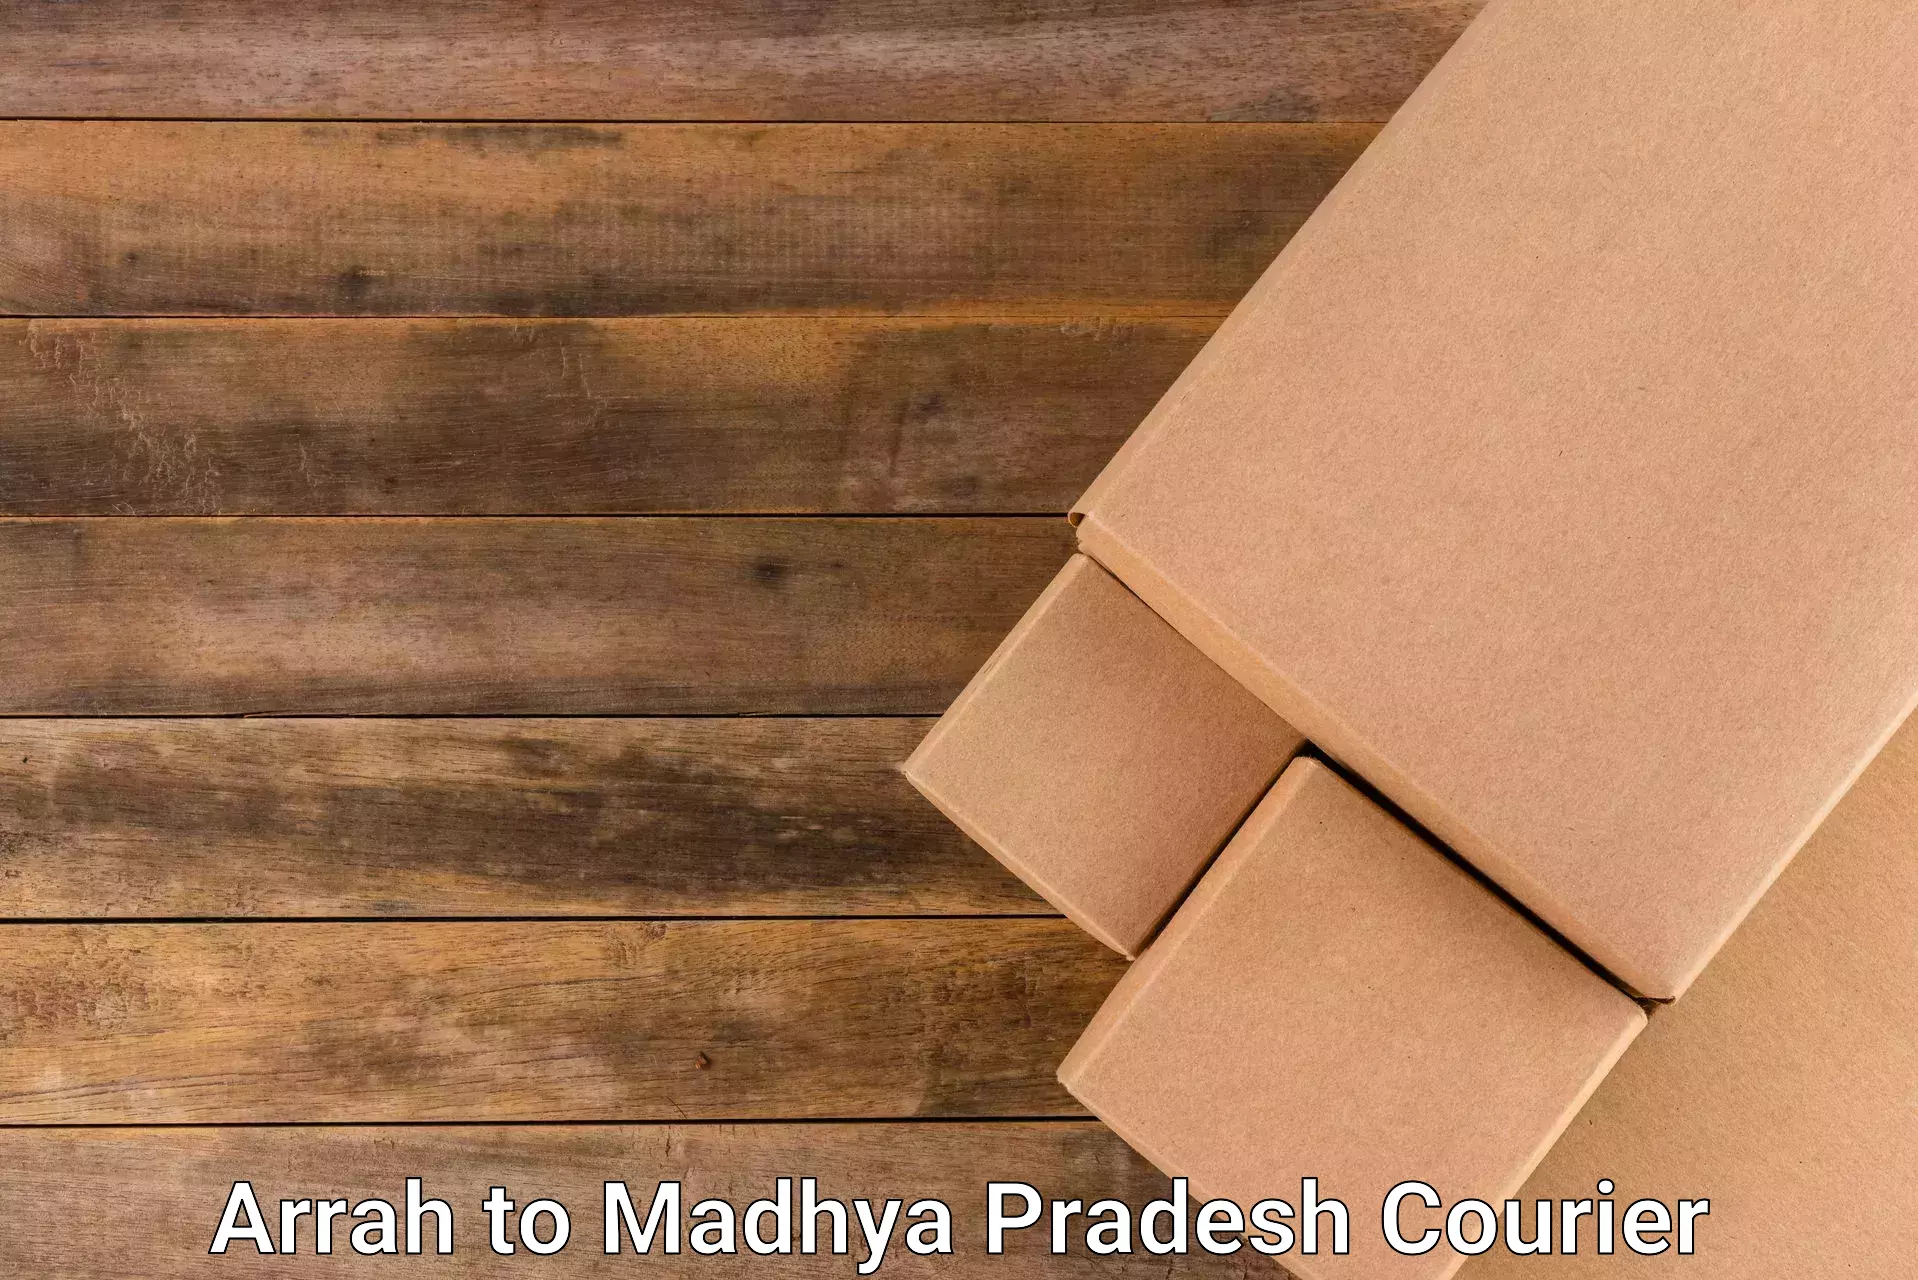 High value parcel delivery Arrah to Ujjain